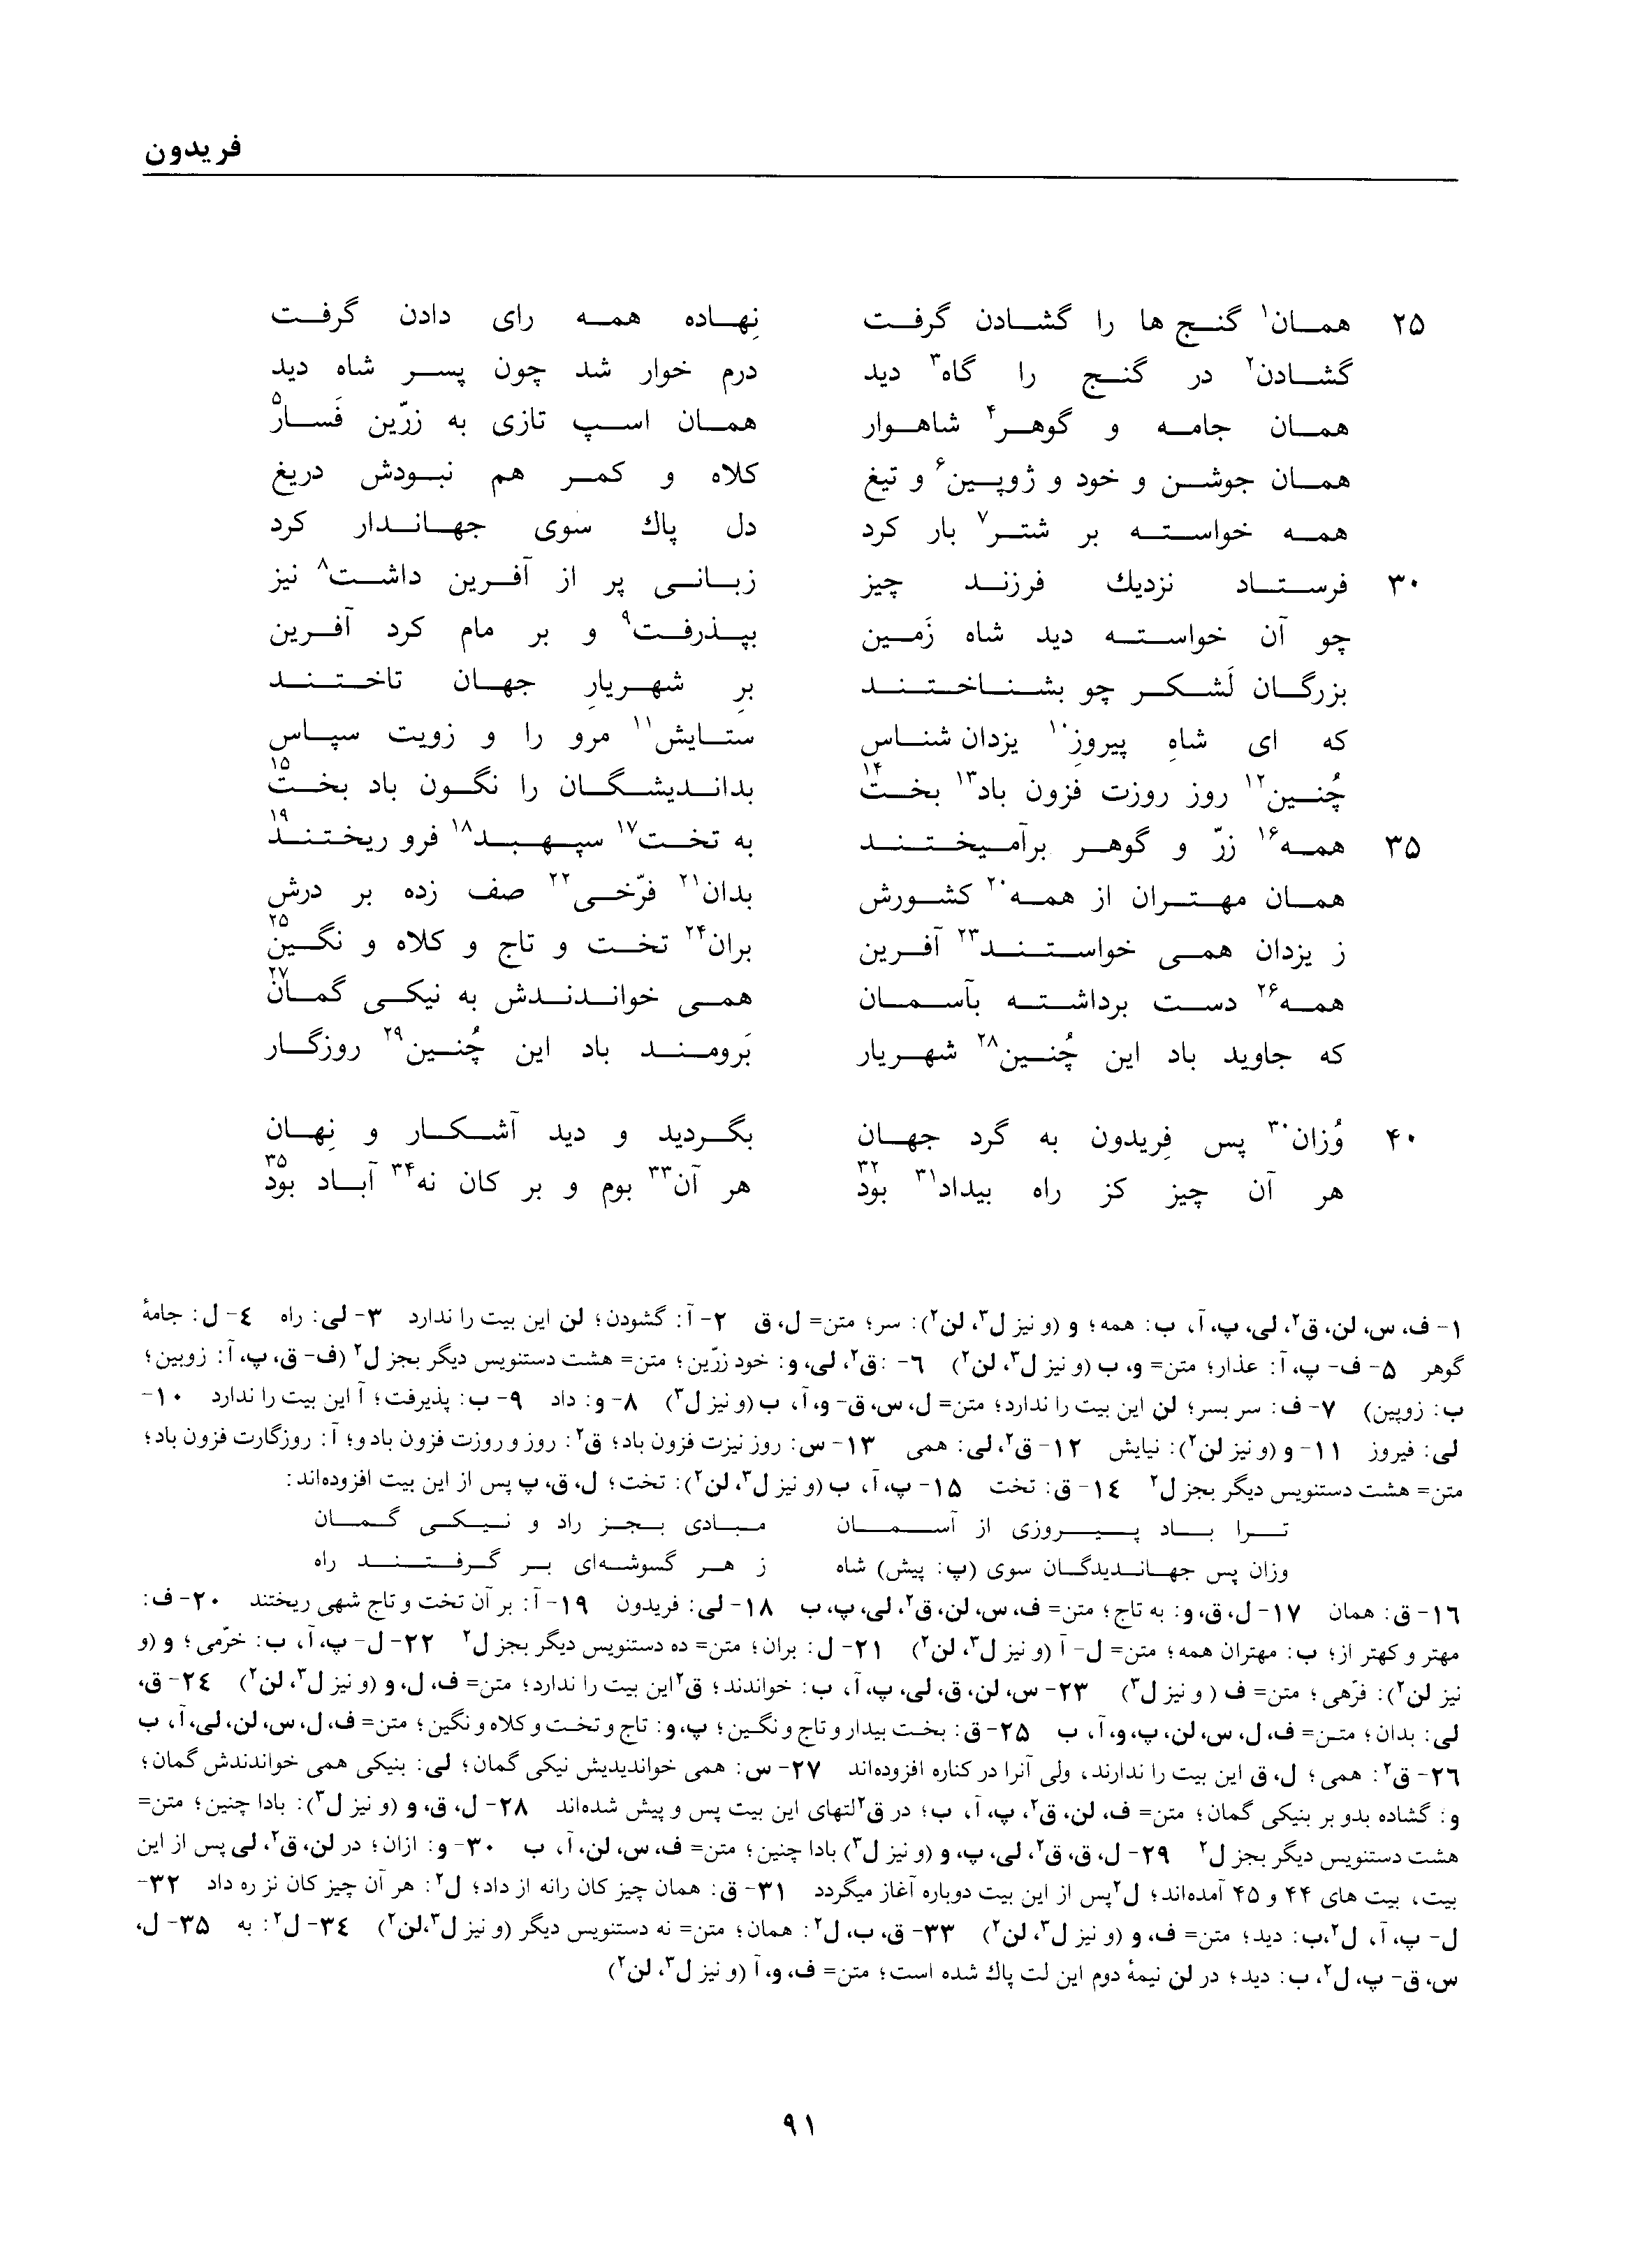 vol. 1, p. 91